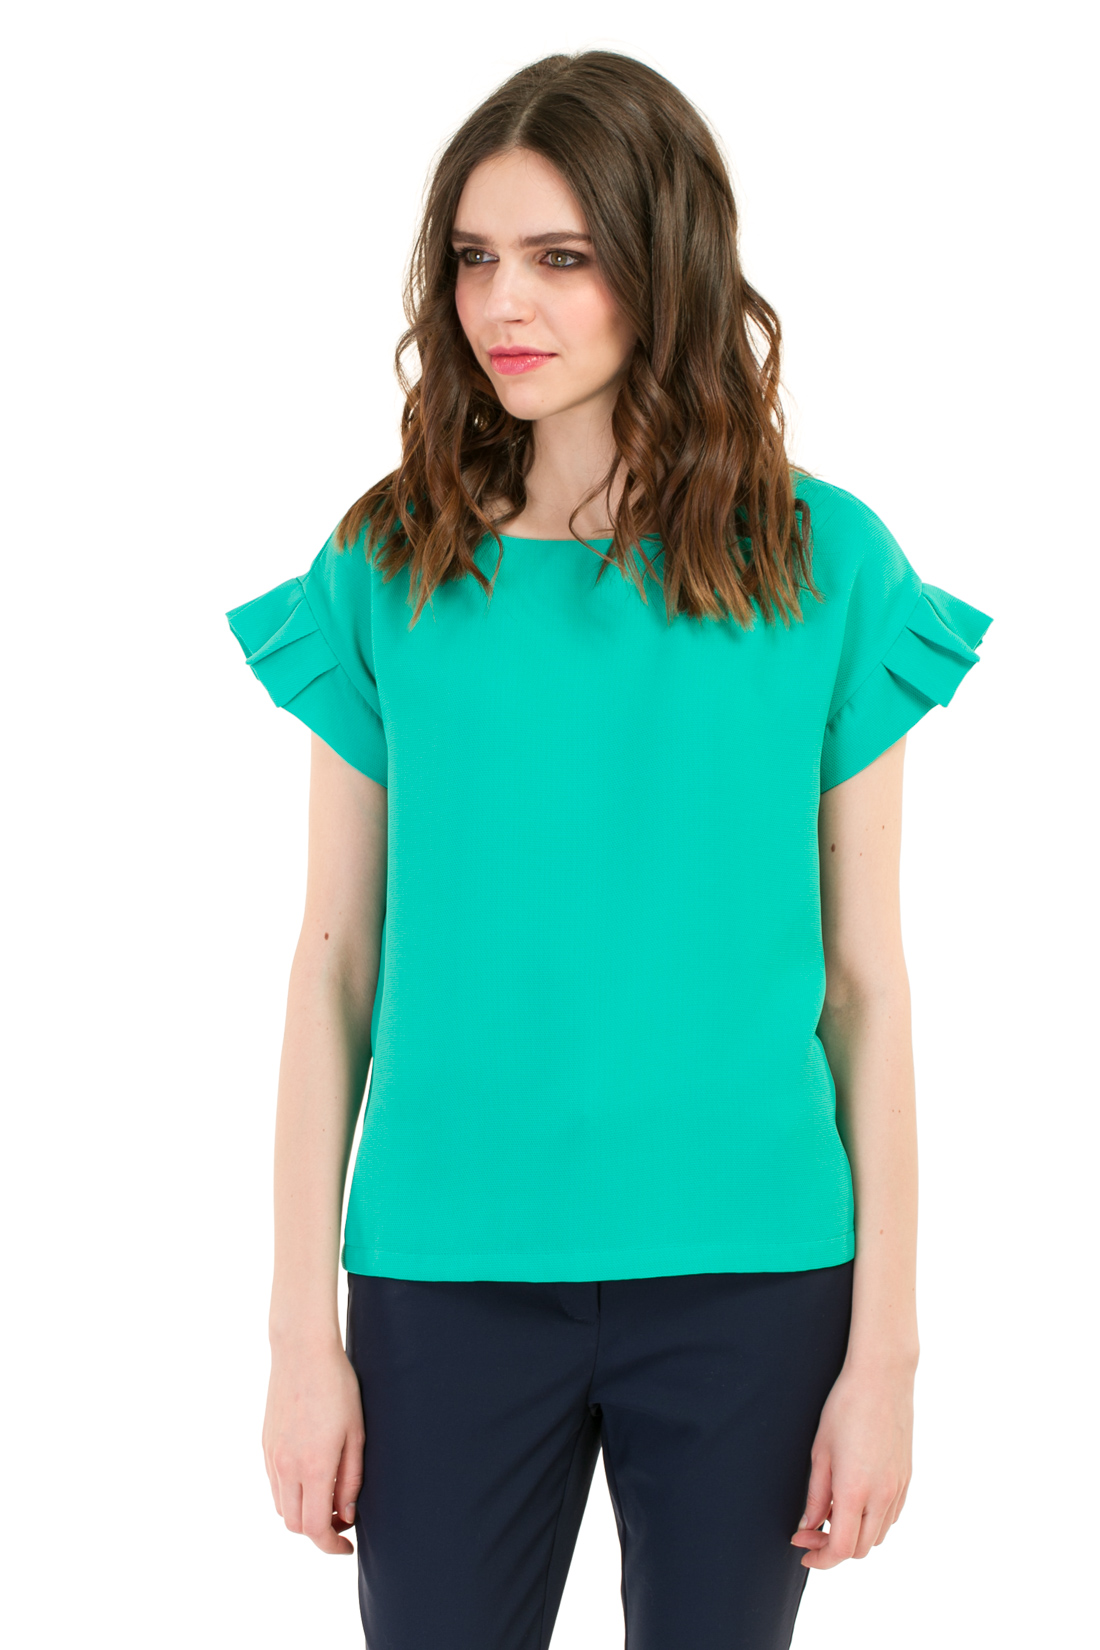 Блузка с рукавами-гофре (арт. baon B197018), размер XXL, цвет зеленый Блузка с рукавами-гофре (арт. baon B197018) - фото 1